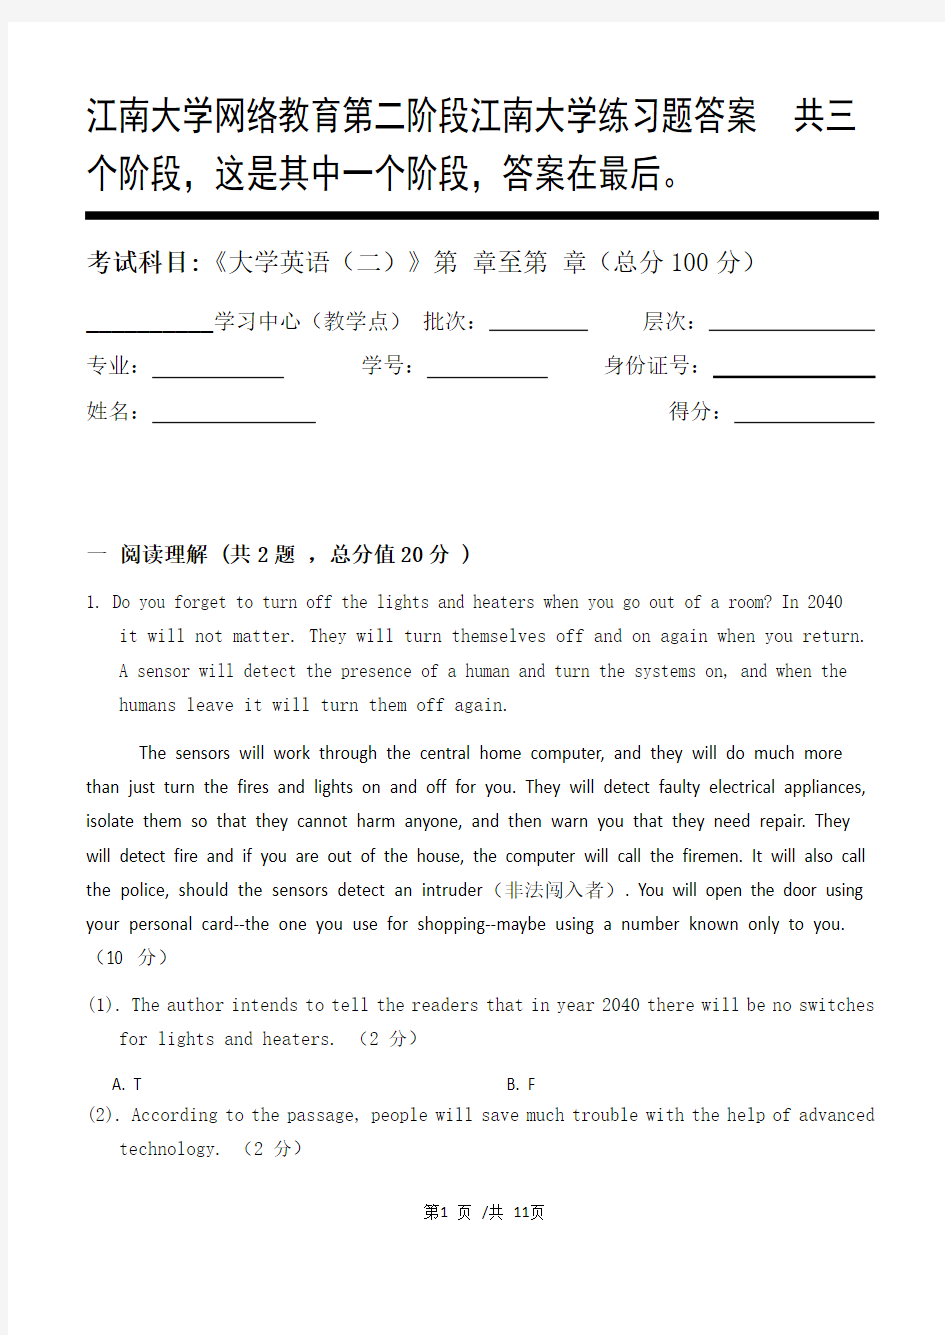 大学英语(二)第2阶段江南大学练习题答案  共三个阶段,这是其中一个阶段,答案在最后。